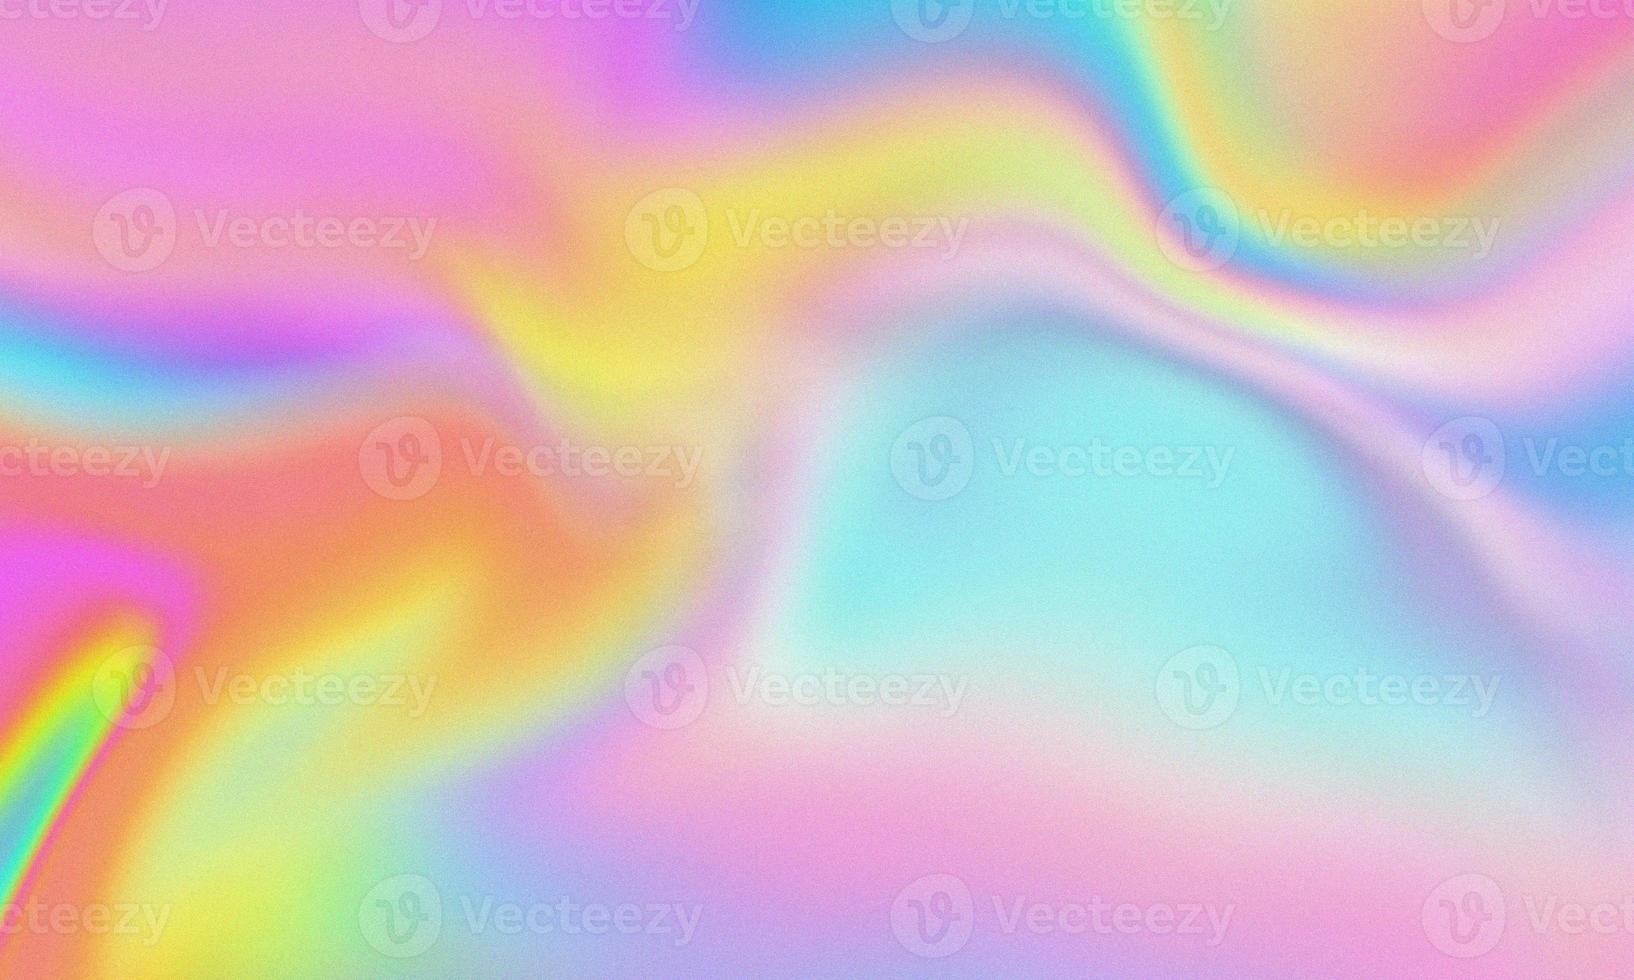 fond de texture granuleuse vague hologramme photo